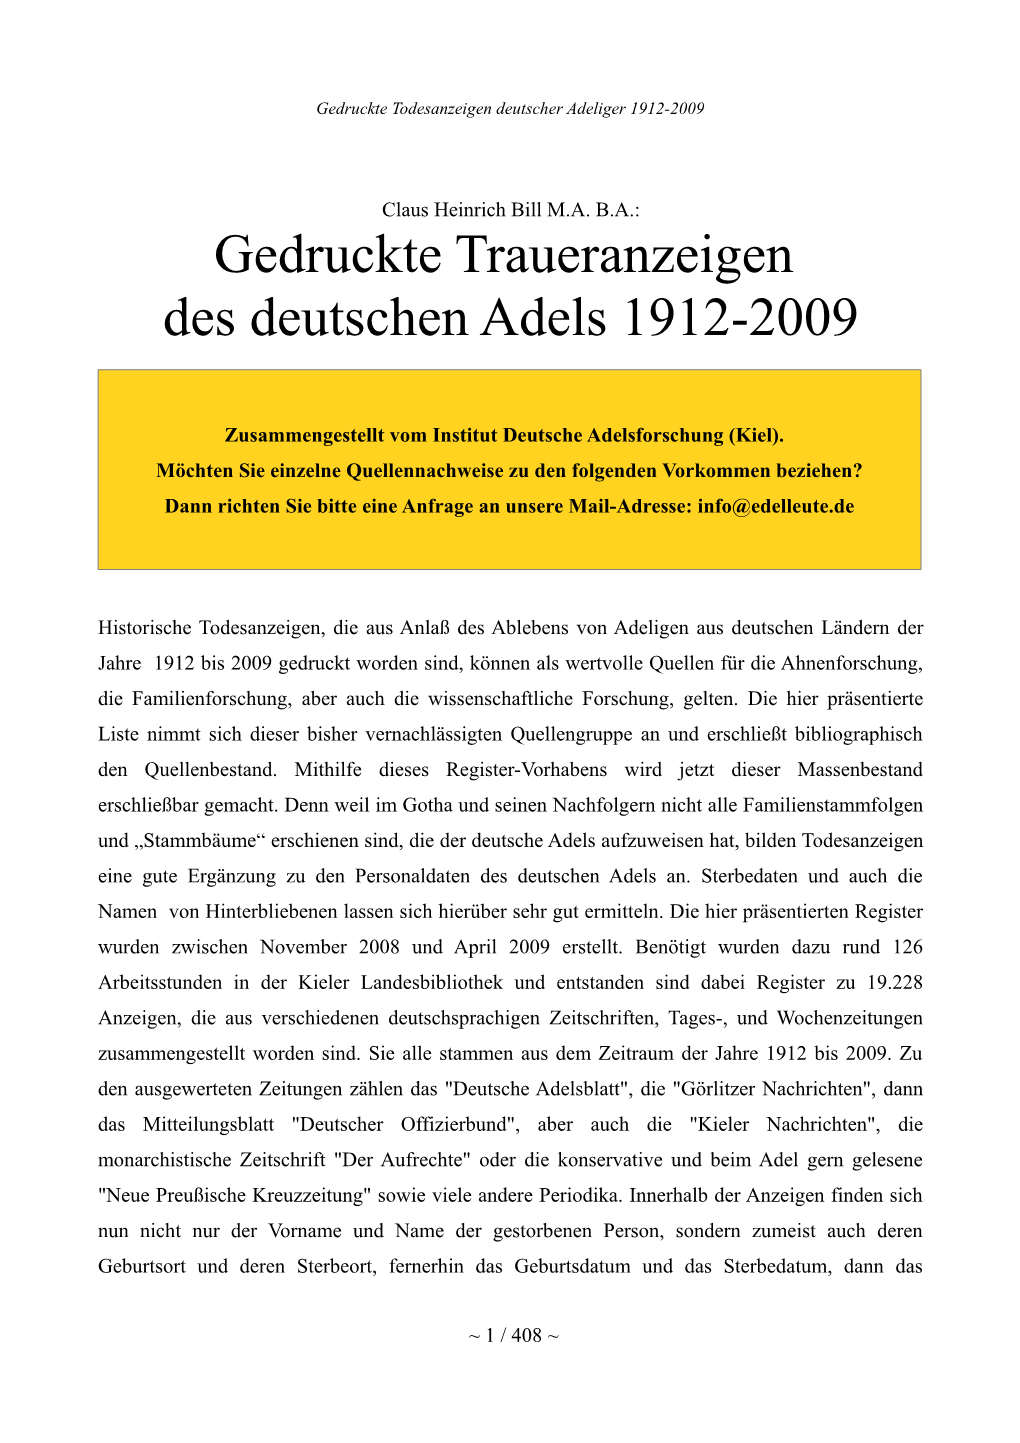 Gedruckte Traueranzeigen Des Deutschen Adels 1912-2009